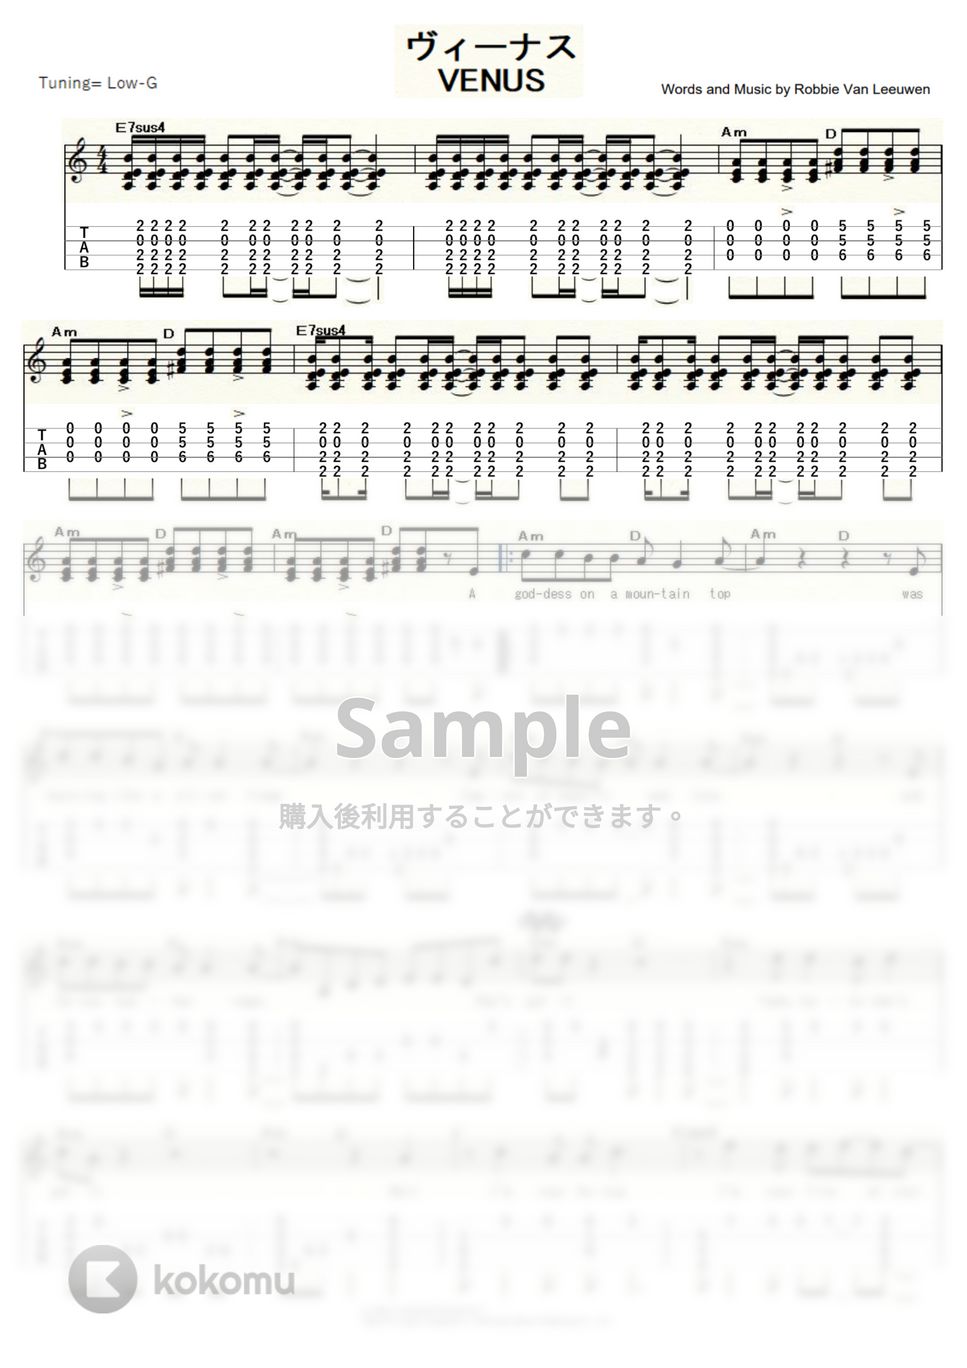 ショッキング・ブルー - VENUS (ｳｸﾚﾚｿﾛ / Low-G / 中級) by ukulelepapa